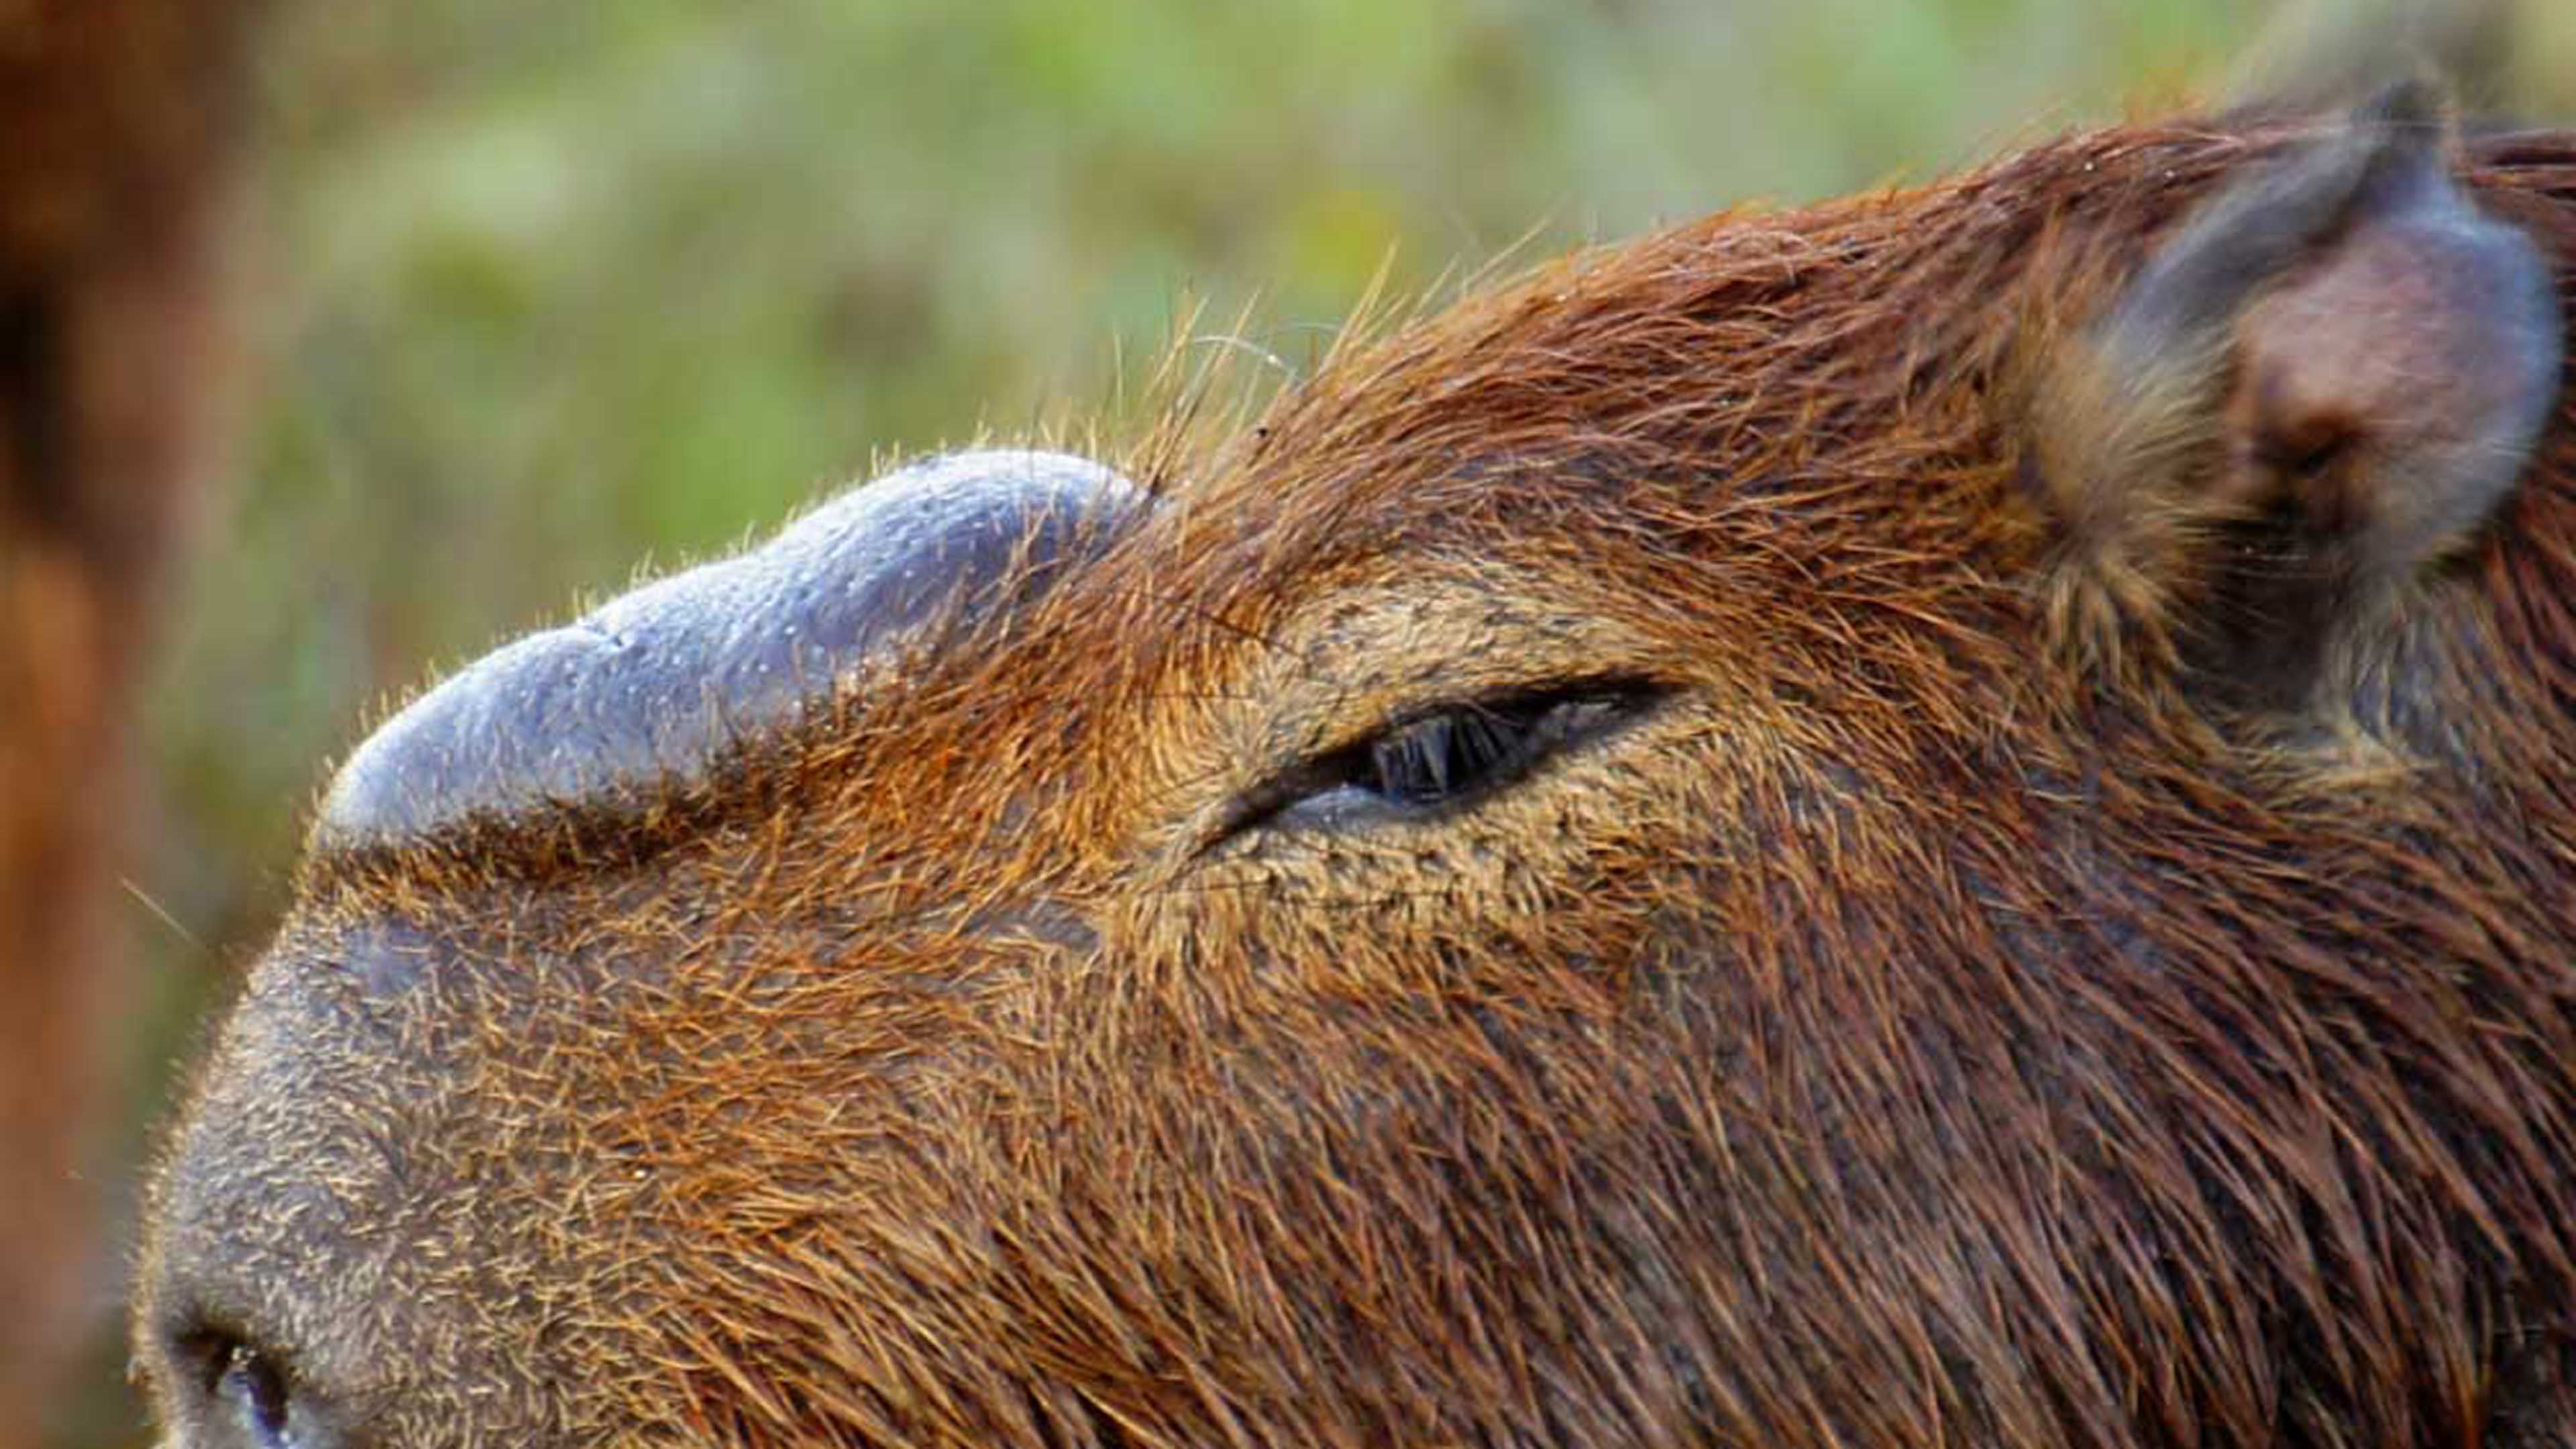 Nahaufnahme der Nasendrüse eines Capybara-Männchens